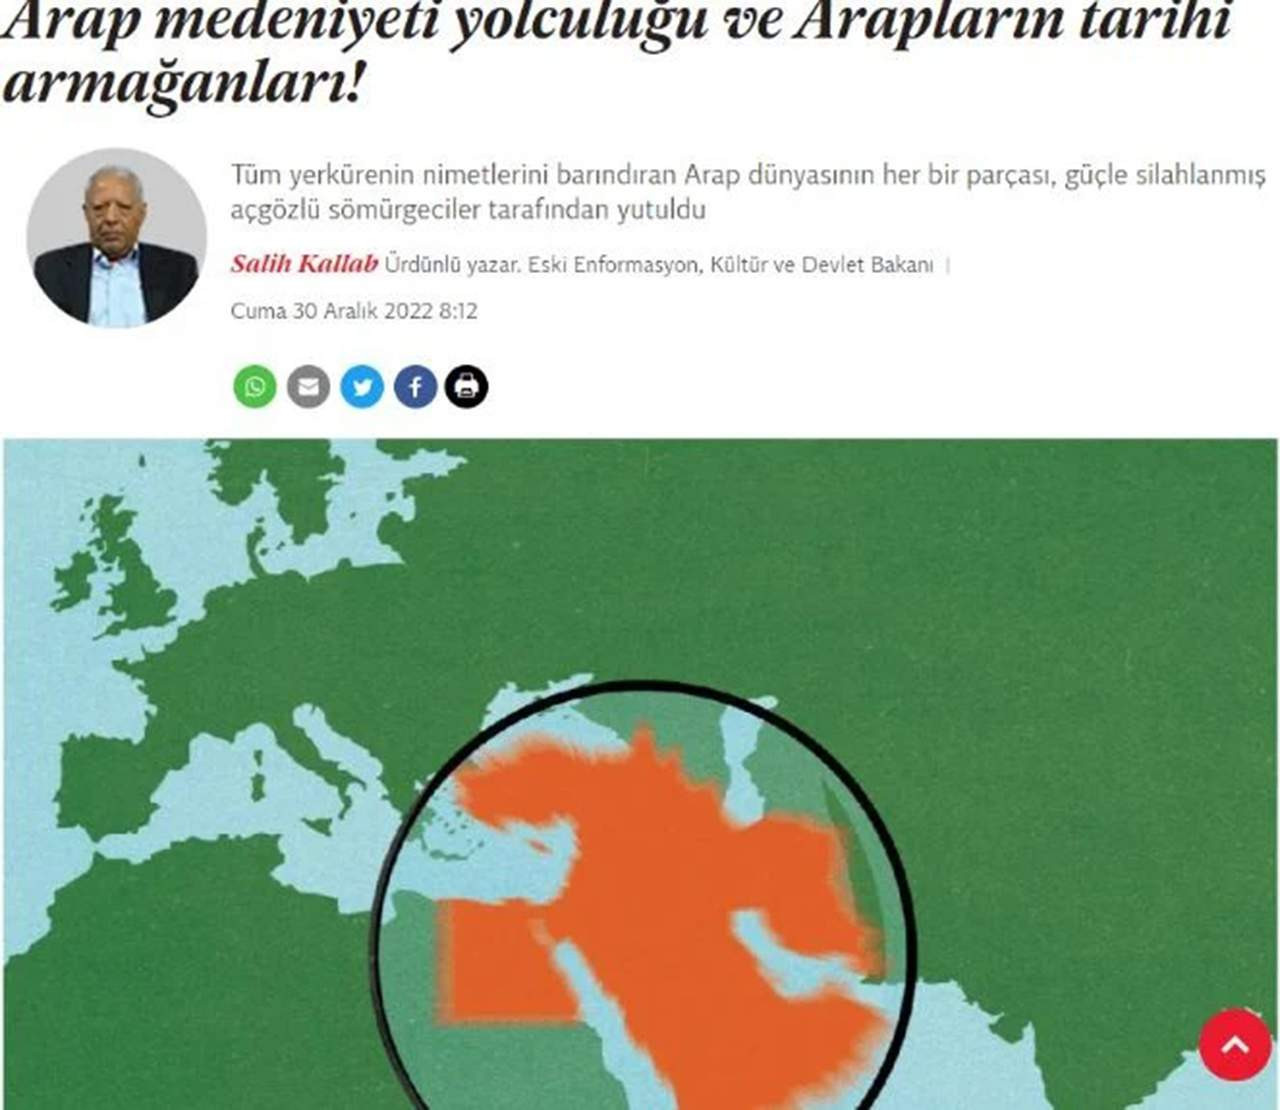 Independent Türkçe Türkiye'yi Arap ülkesi olarak gösterdi